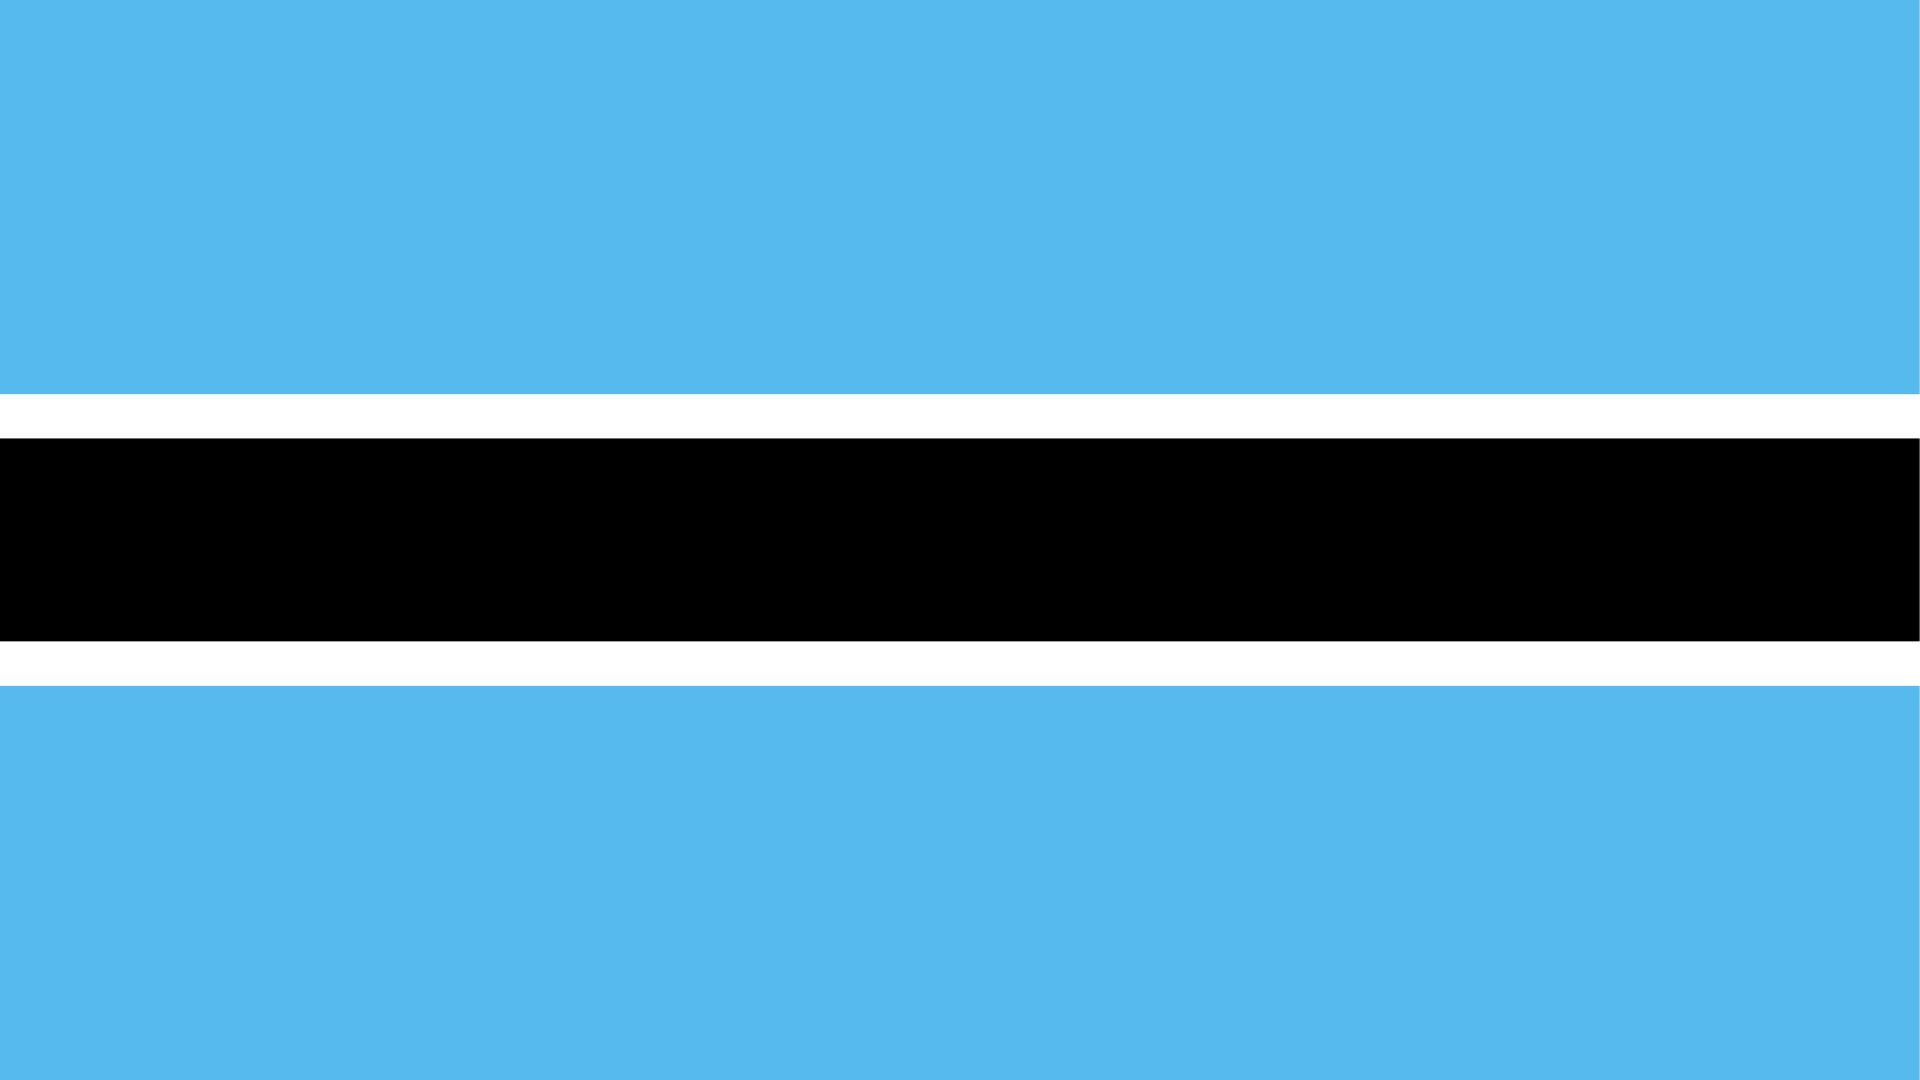 Imagem da bandeira composta pelas cores azul claro, com uma listra preto no centro e contornos na cor branca.